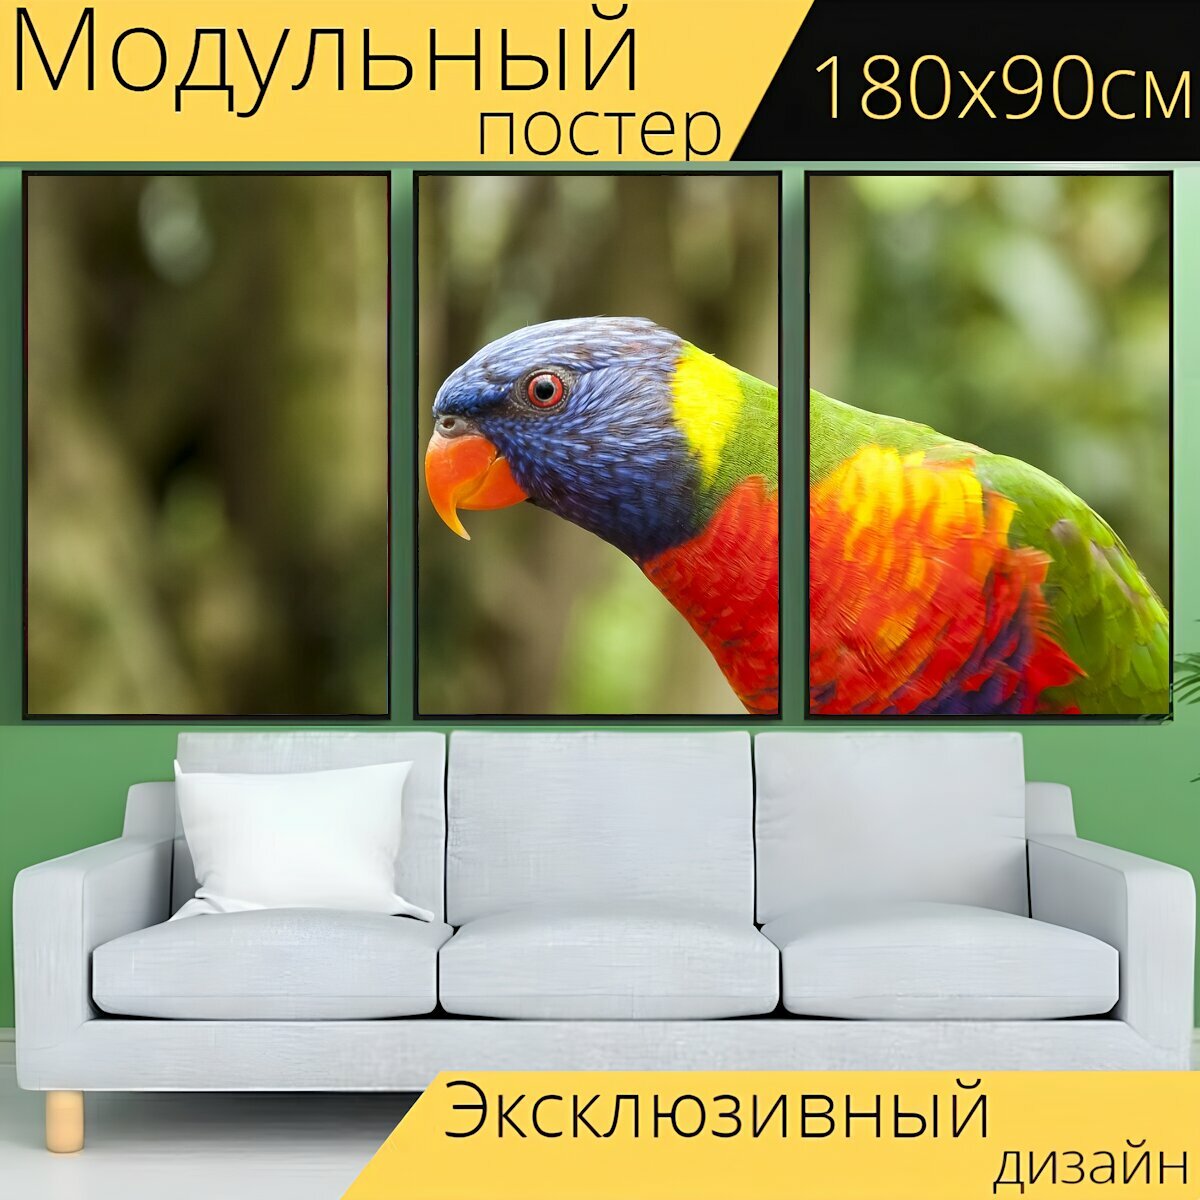 Модульный постер "Птица лорикет попугай" 180 x 90 см. для интерьера